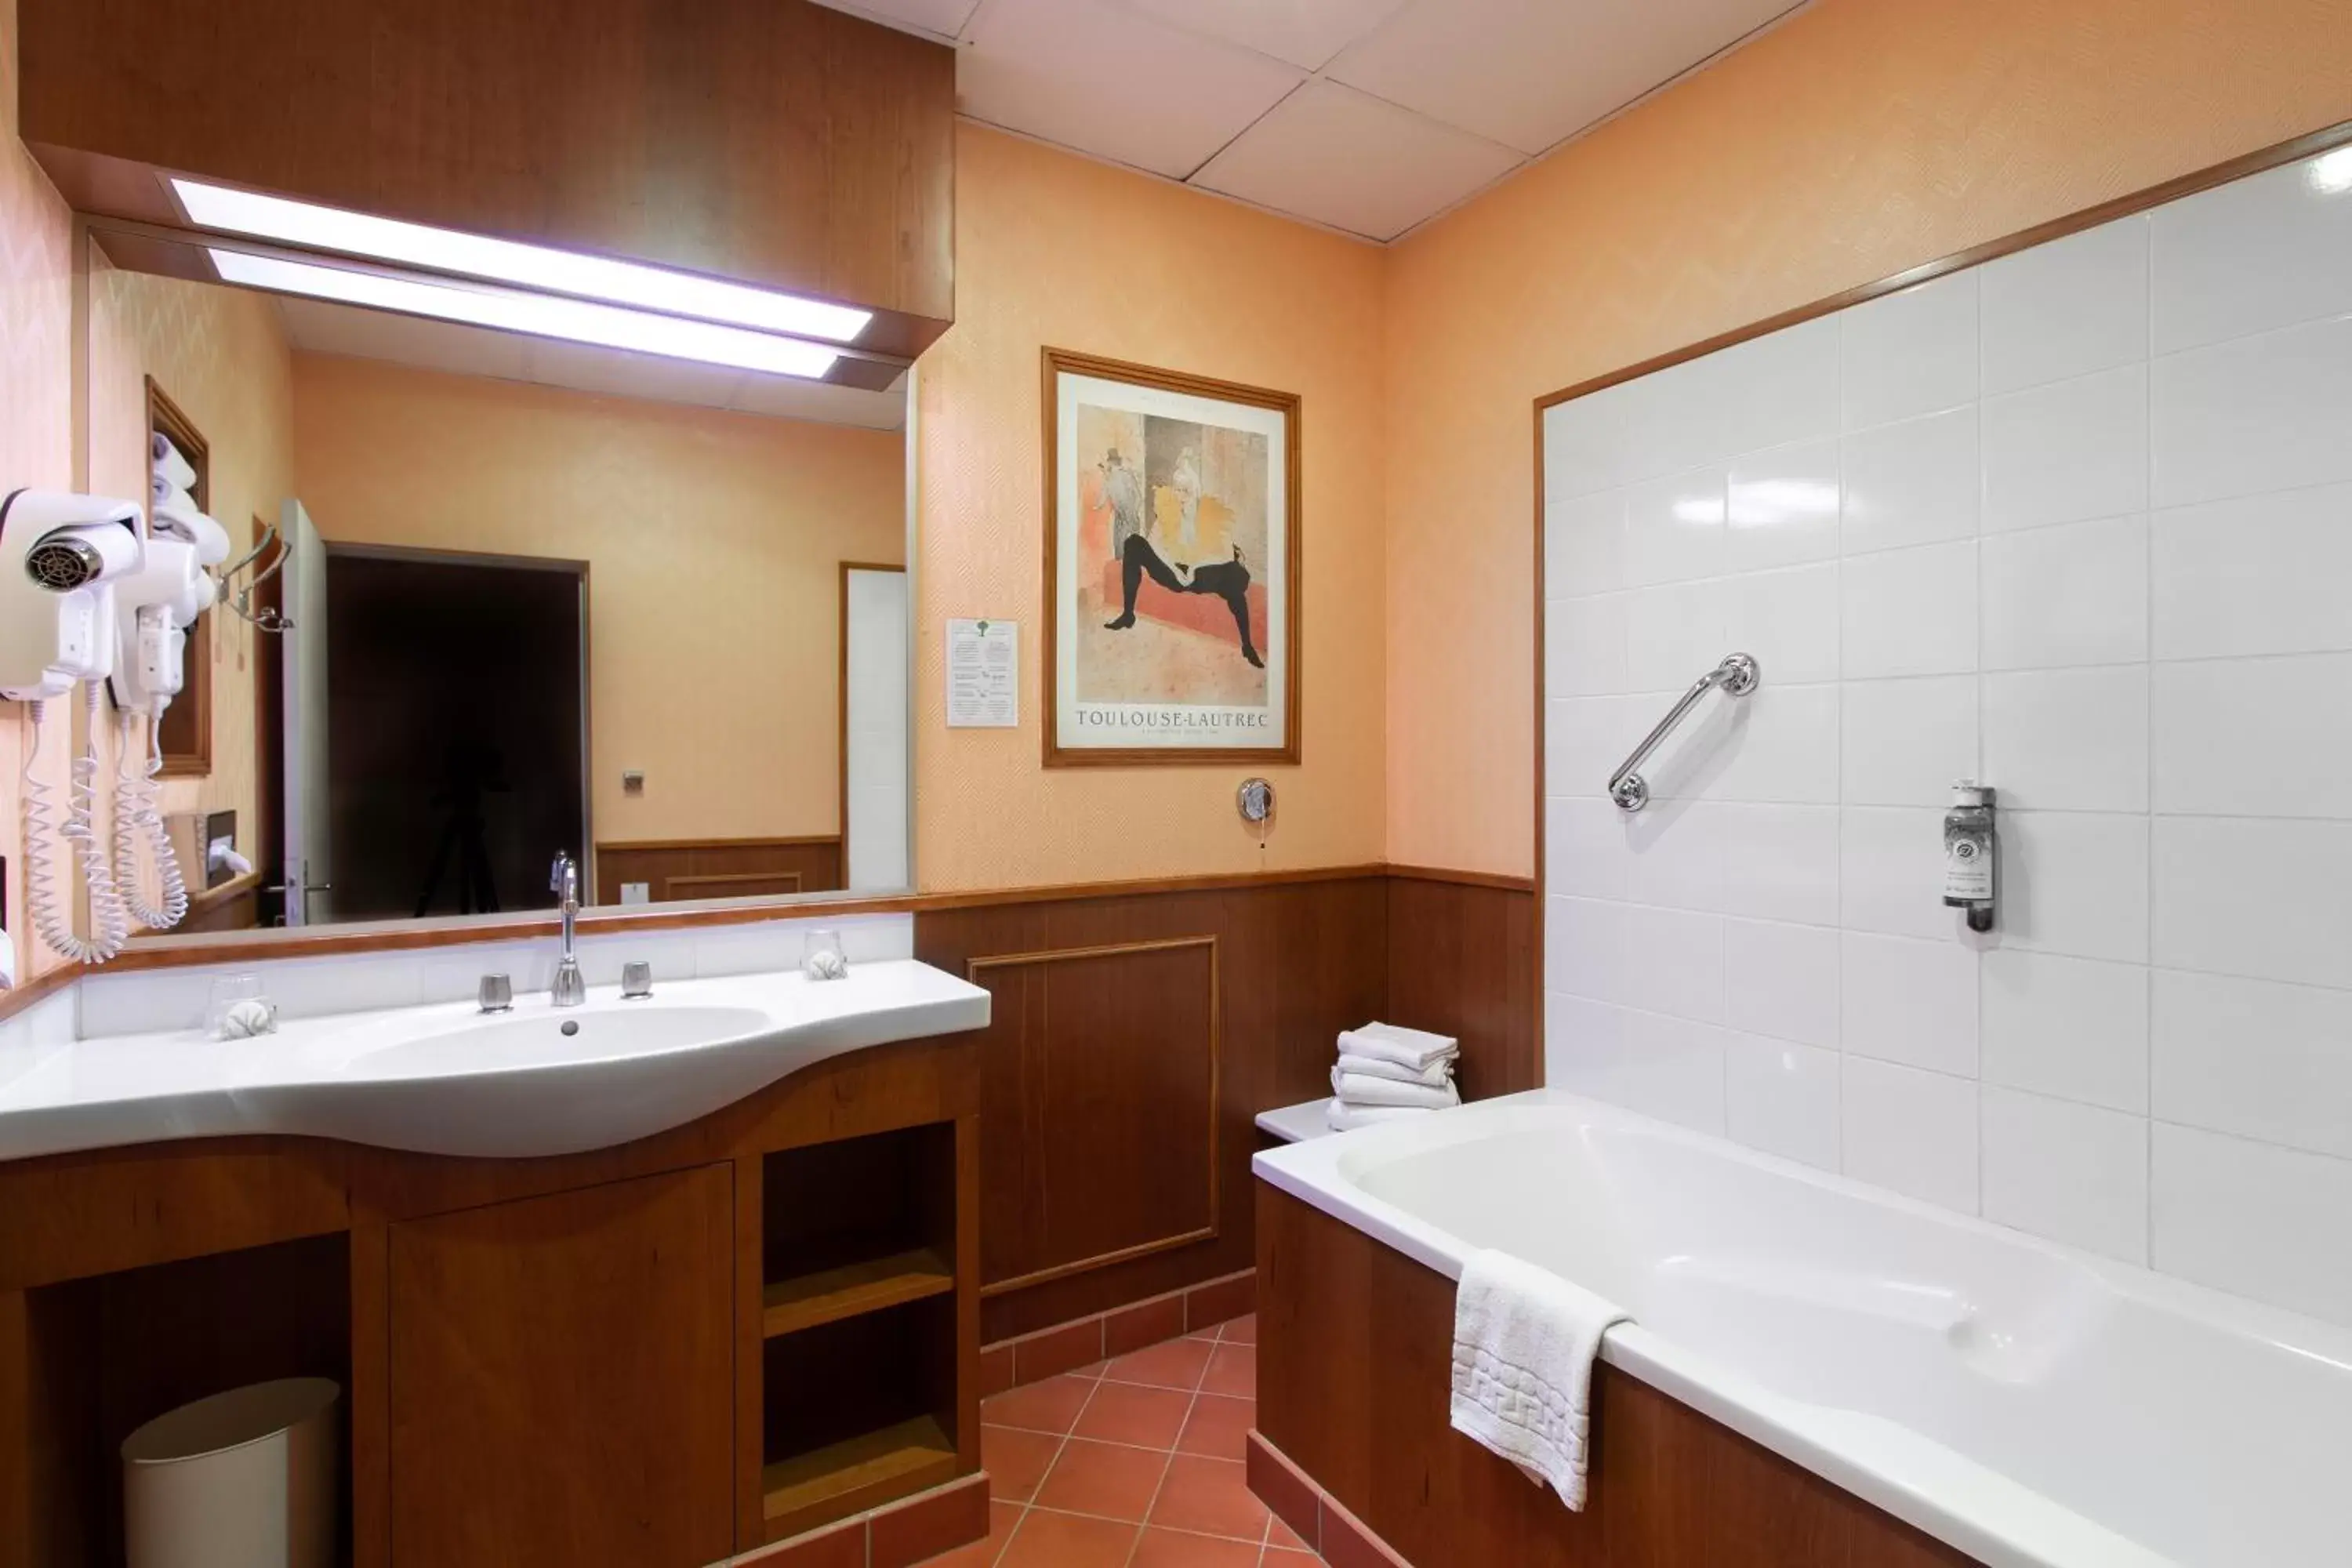 Bathroom in Hotel De La Paix